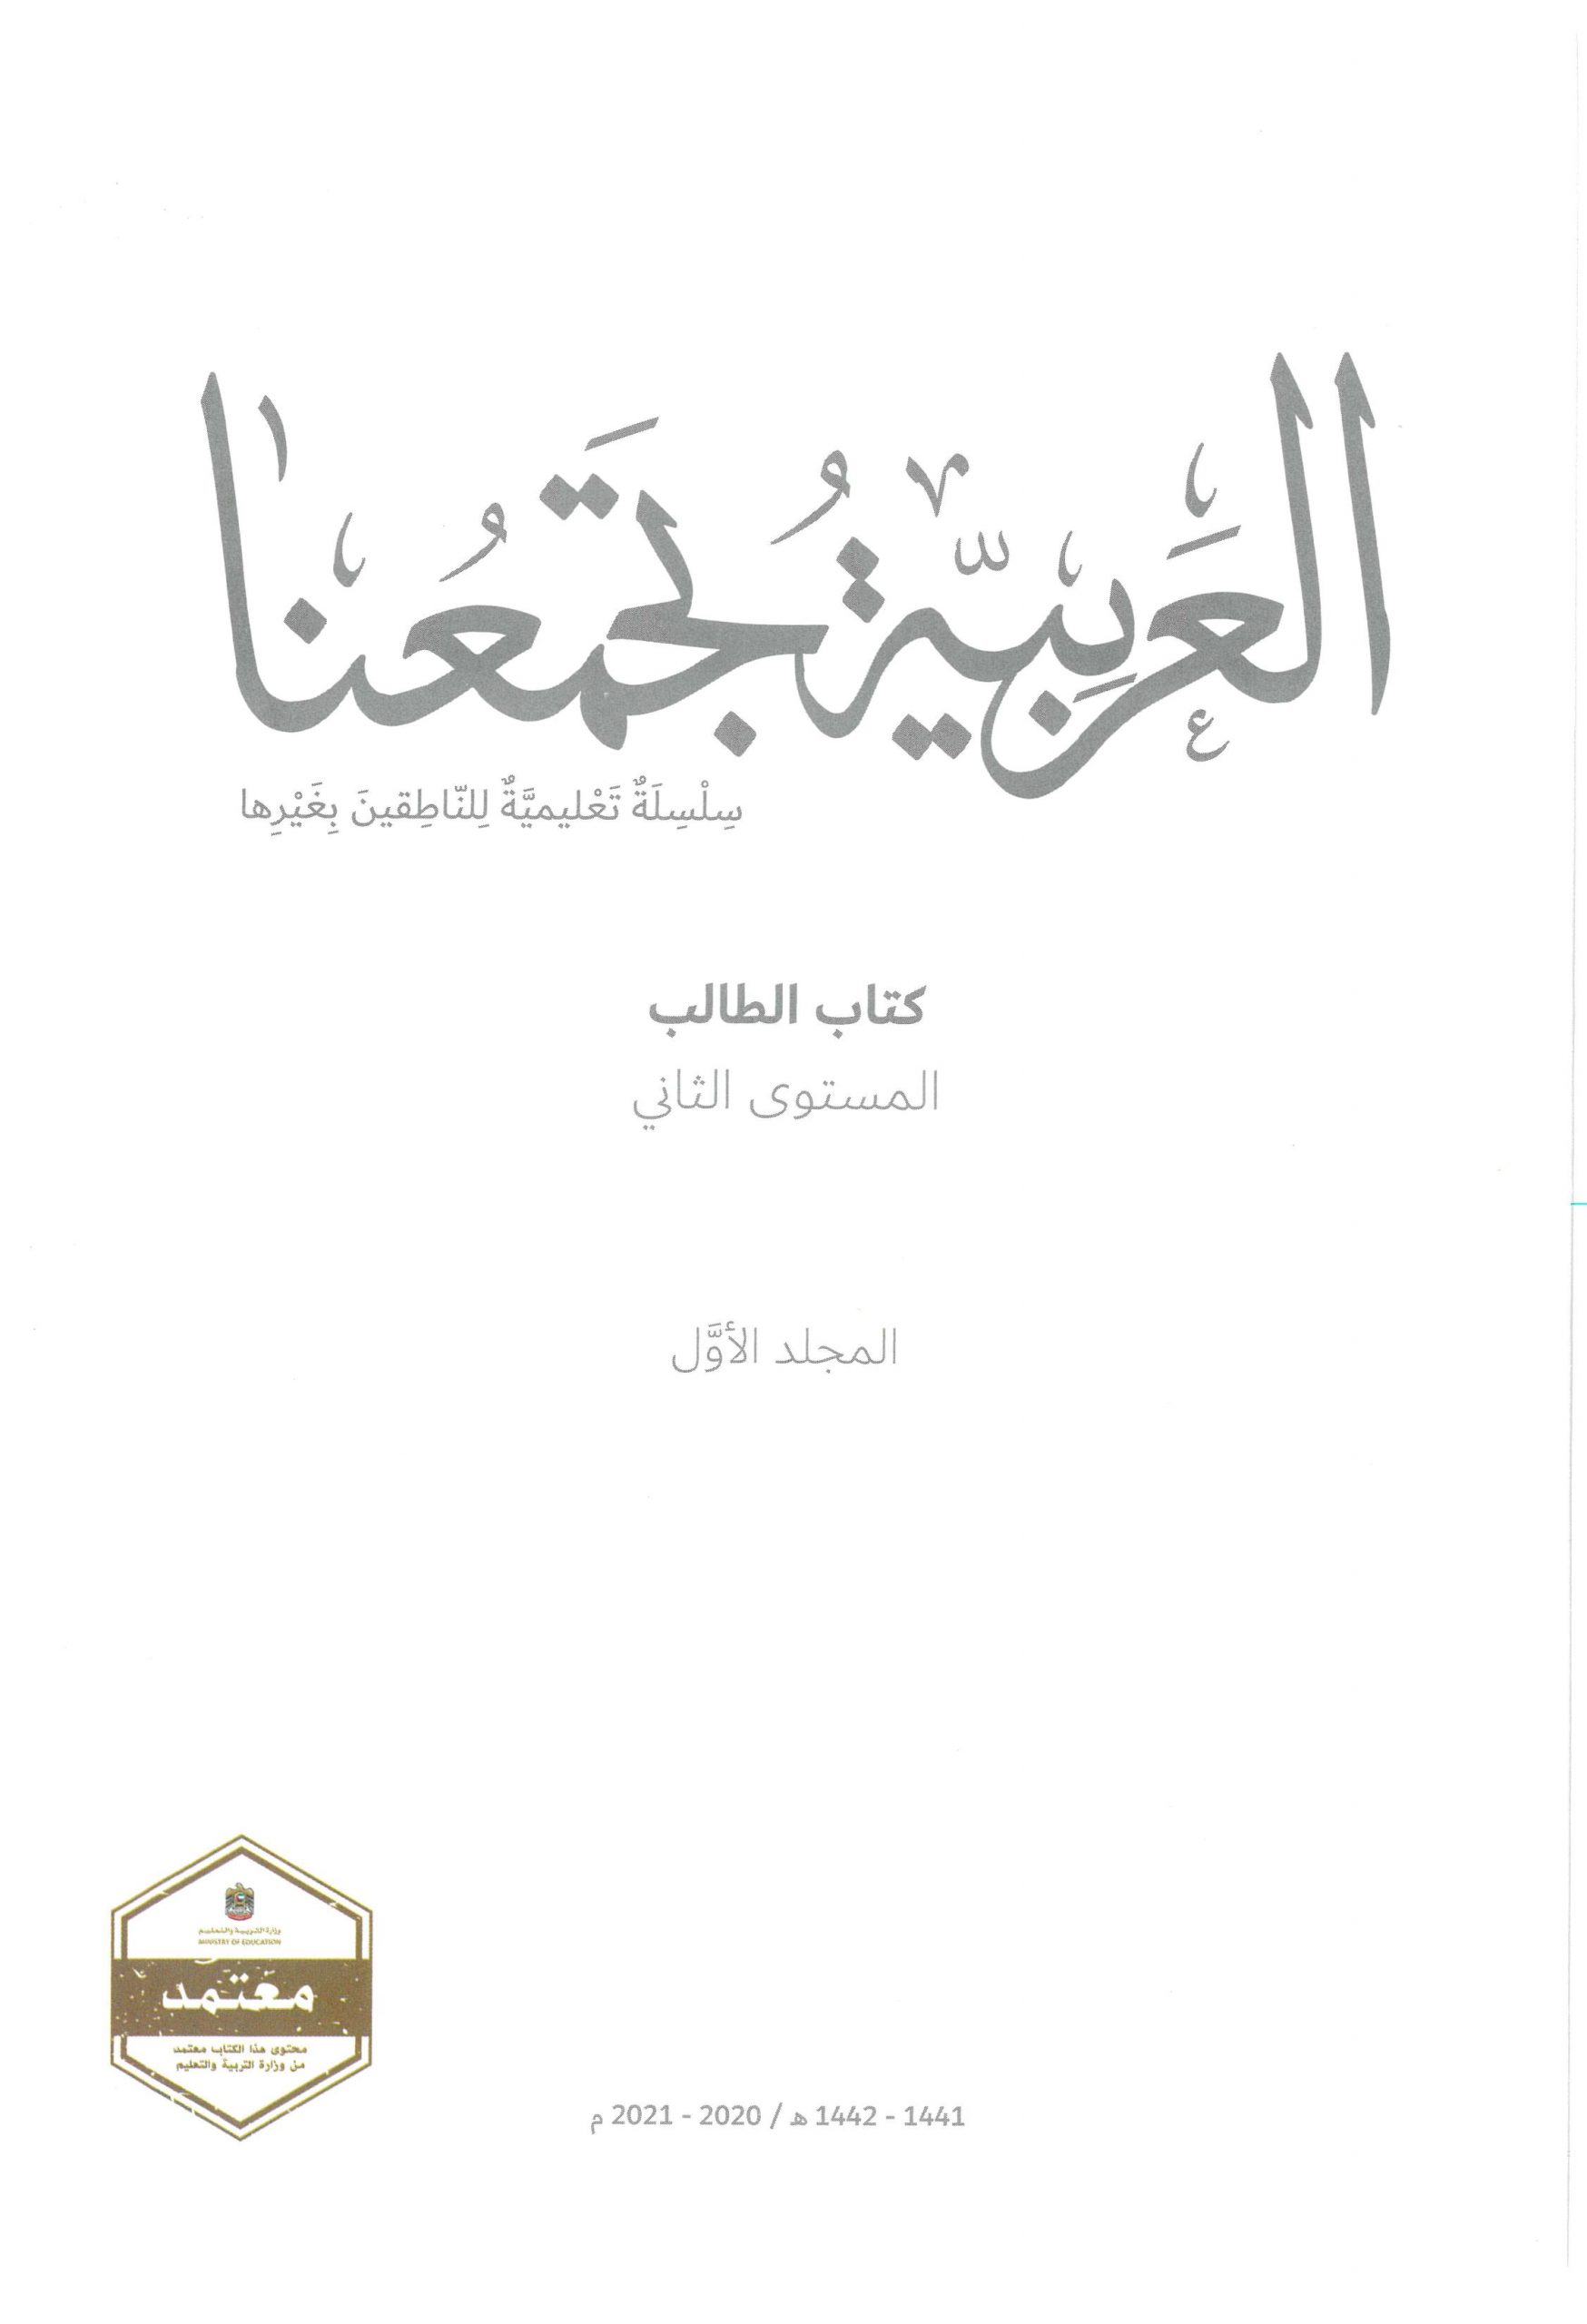 كتاب الطالب 2020 - 2021 لغير الناطقين بها للصف الثاني مادة اللغة العربية 